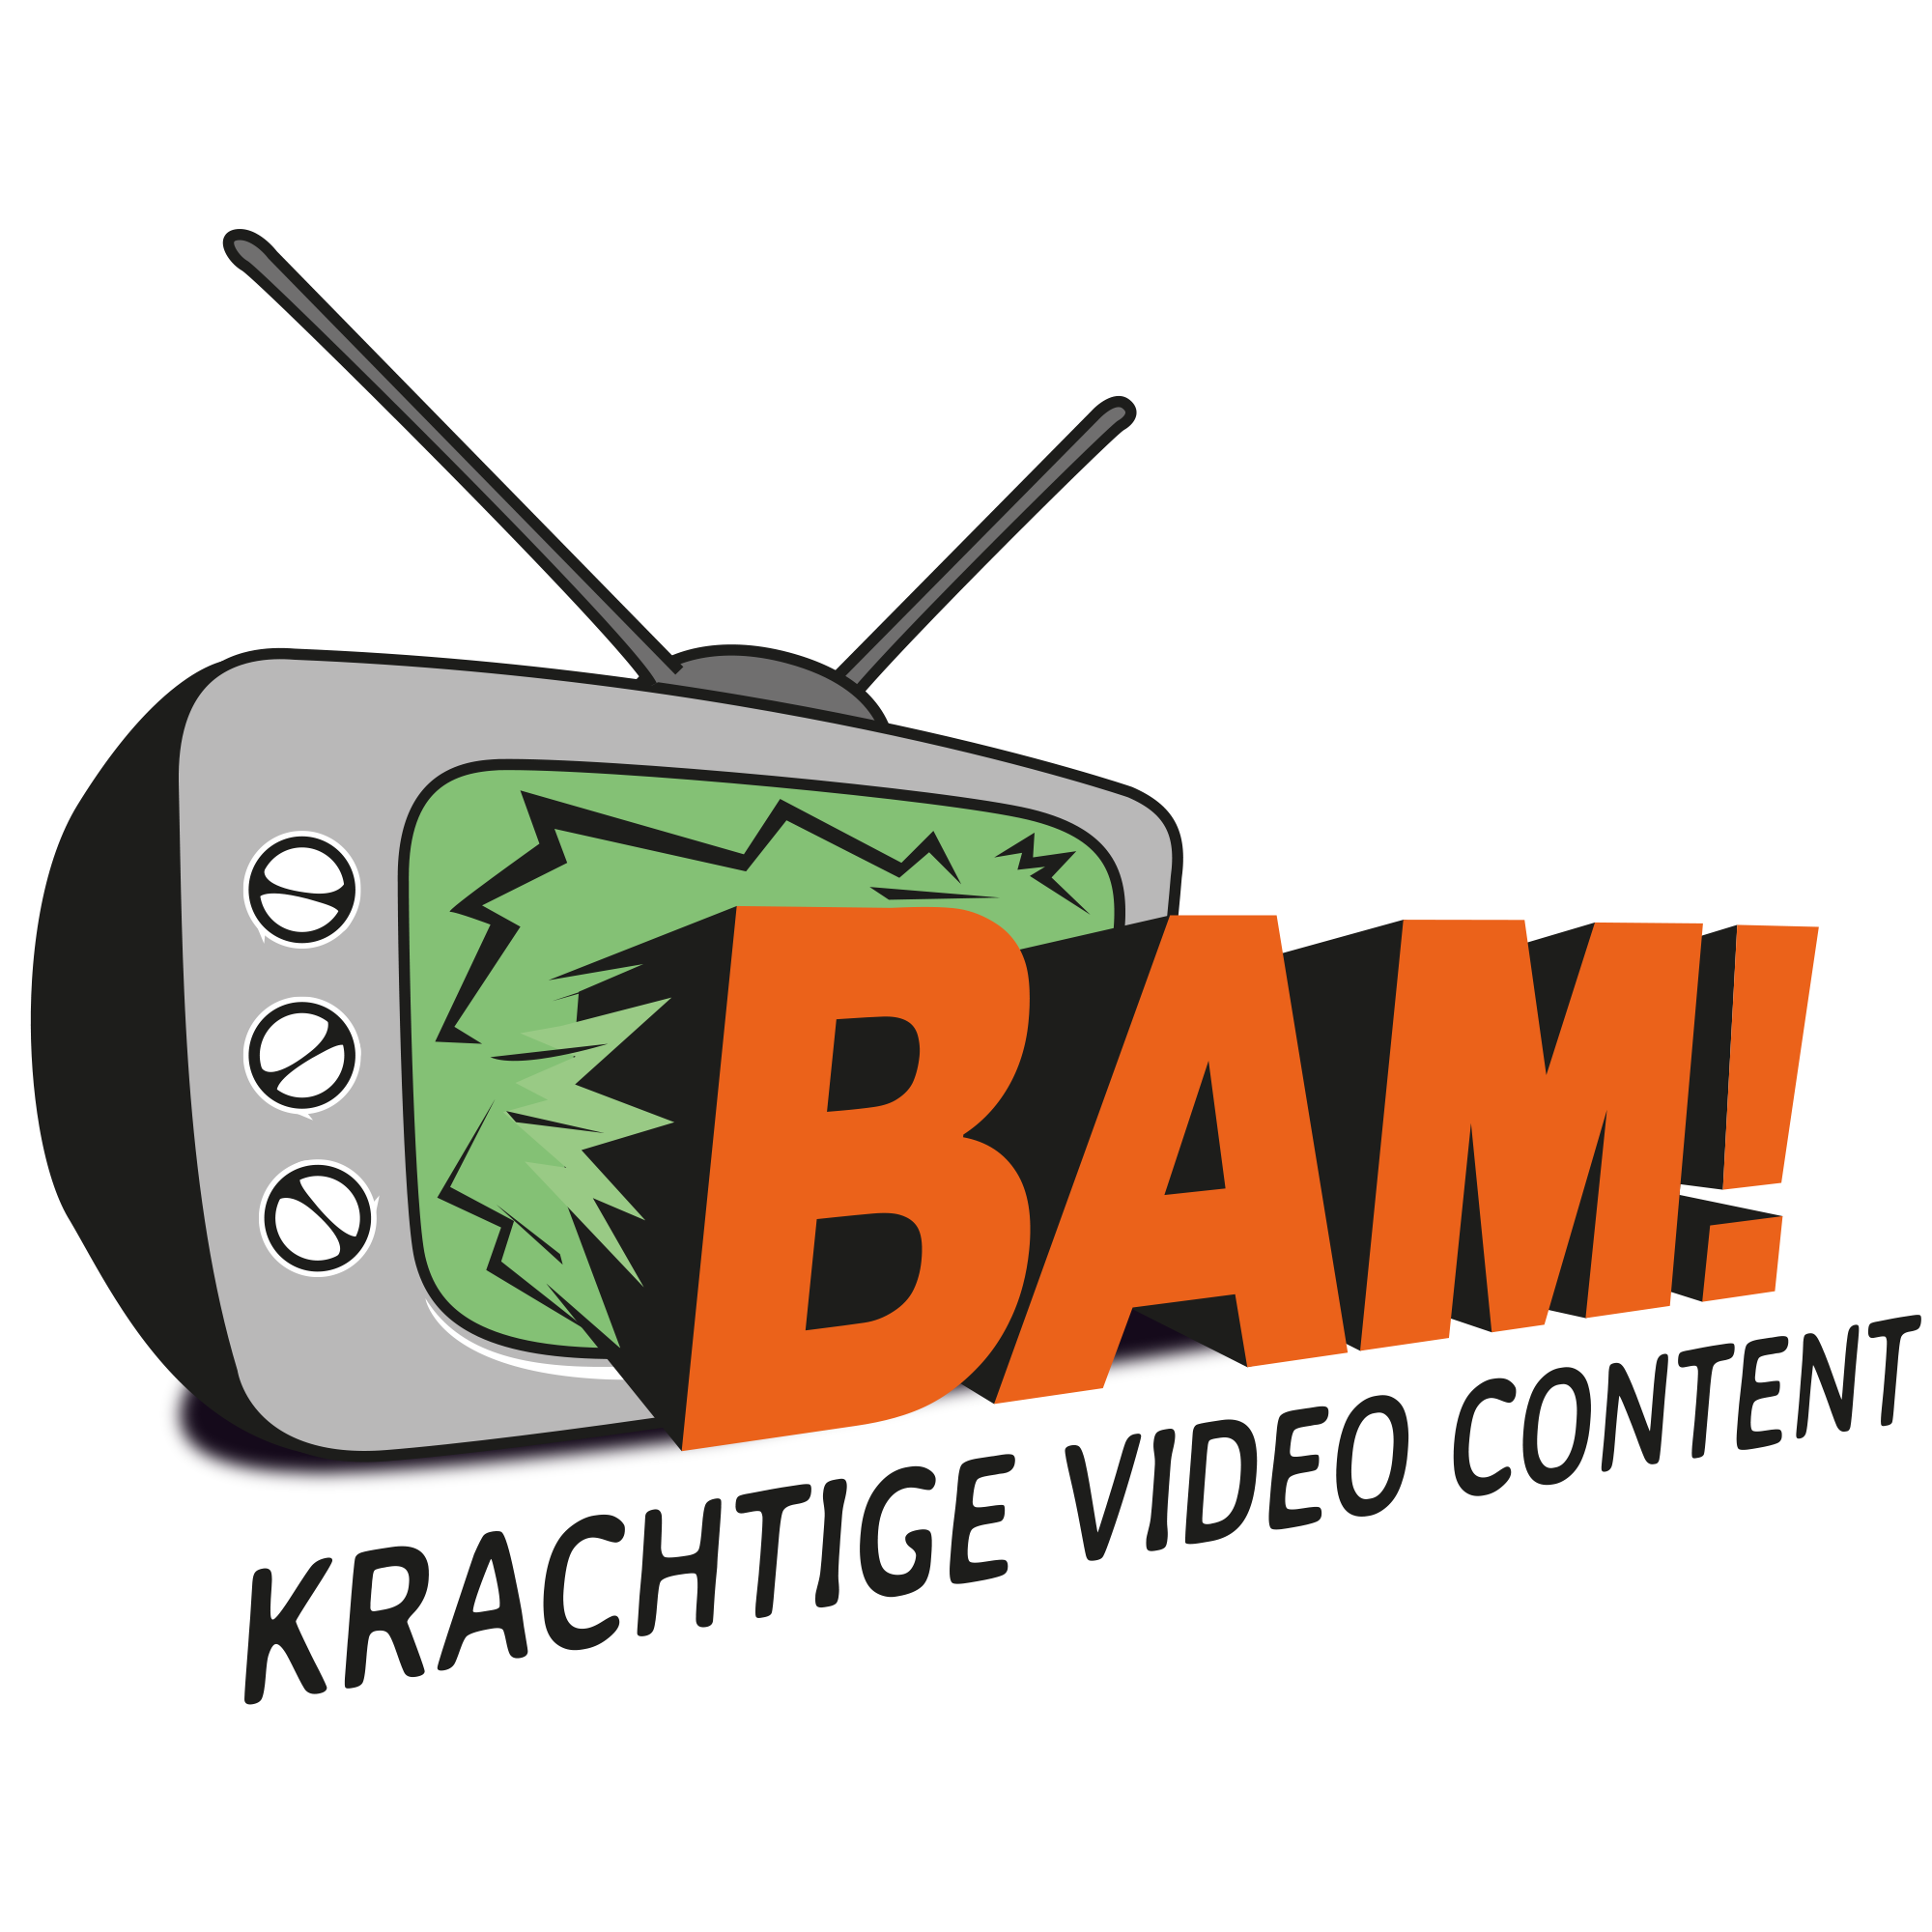 BAM Logo